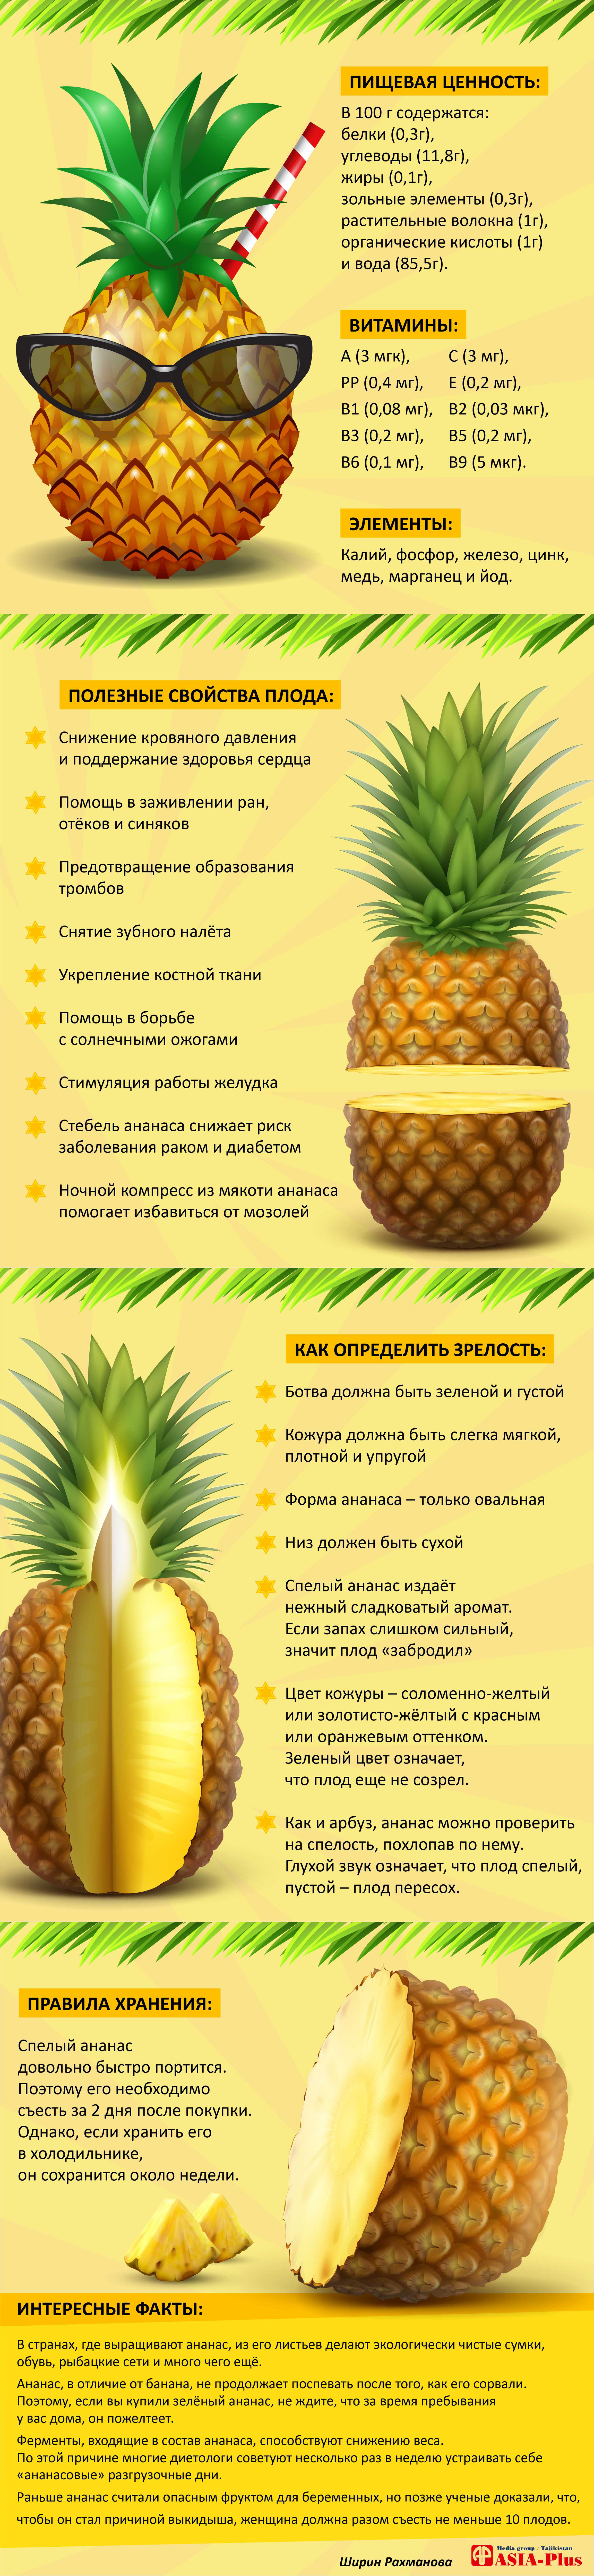 Как правильно выбирать ананас к новогоднему столу? | Новости Таджикистана  ASIA-Plus